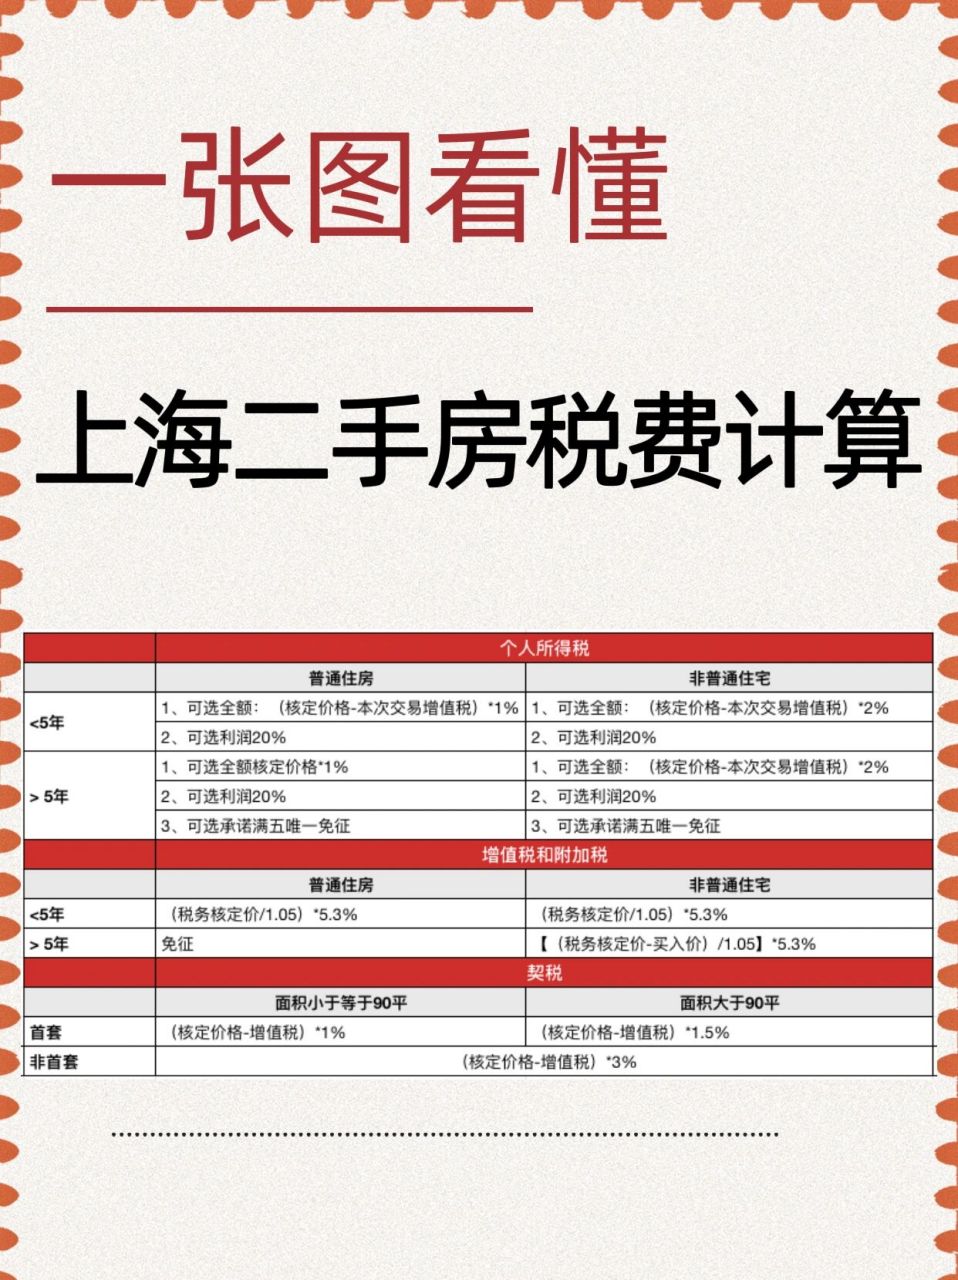 一张图看懂上海二手房税费怎么计算 上海二手房税费怎么算?